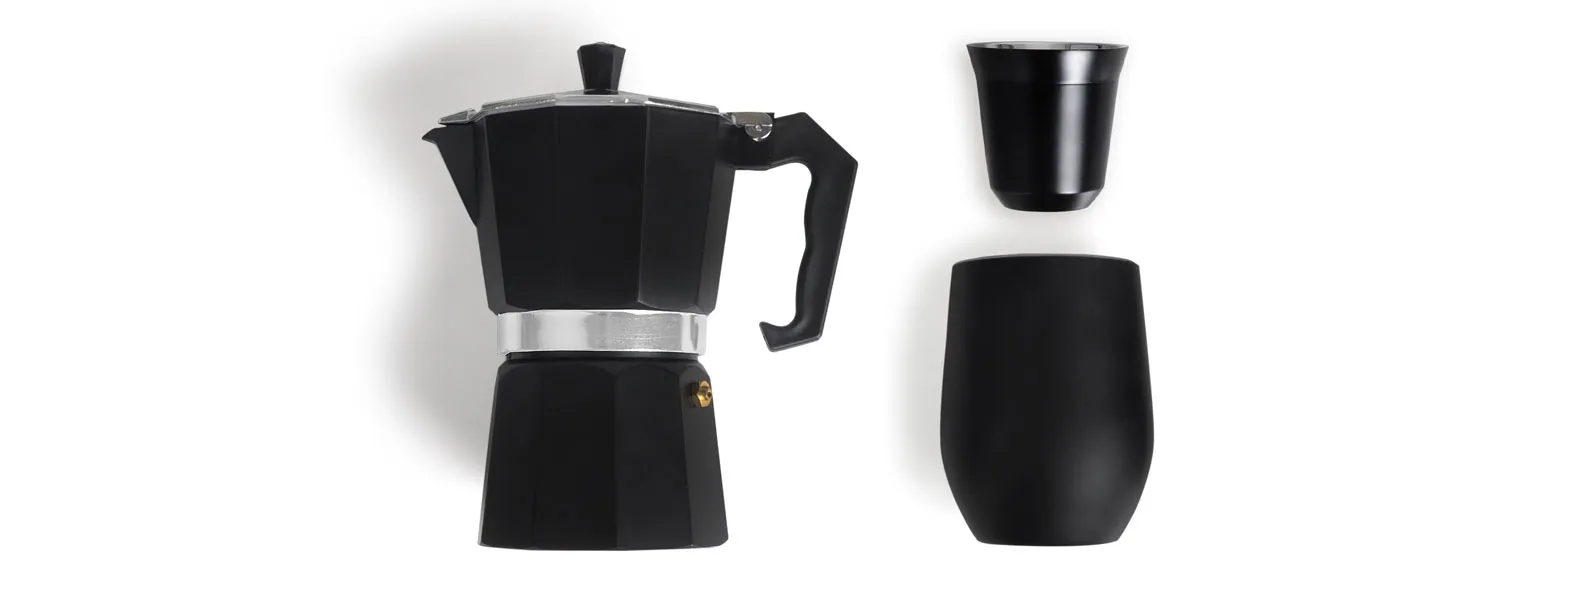 Kit para café. Conta com cafeteira prensa francesa e dois copos para café em aço inox preto, um de 80ml e outro de 340ml com tampa.